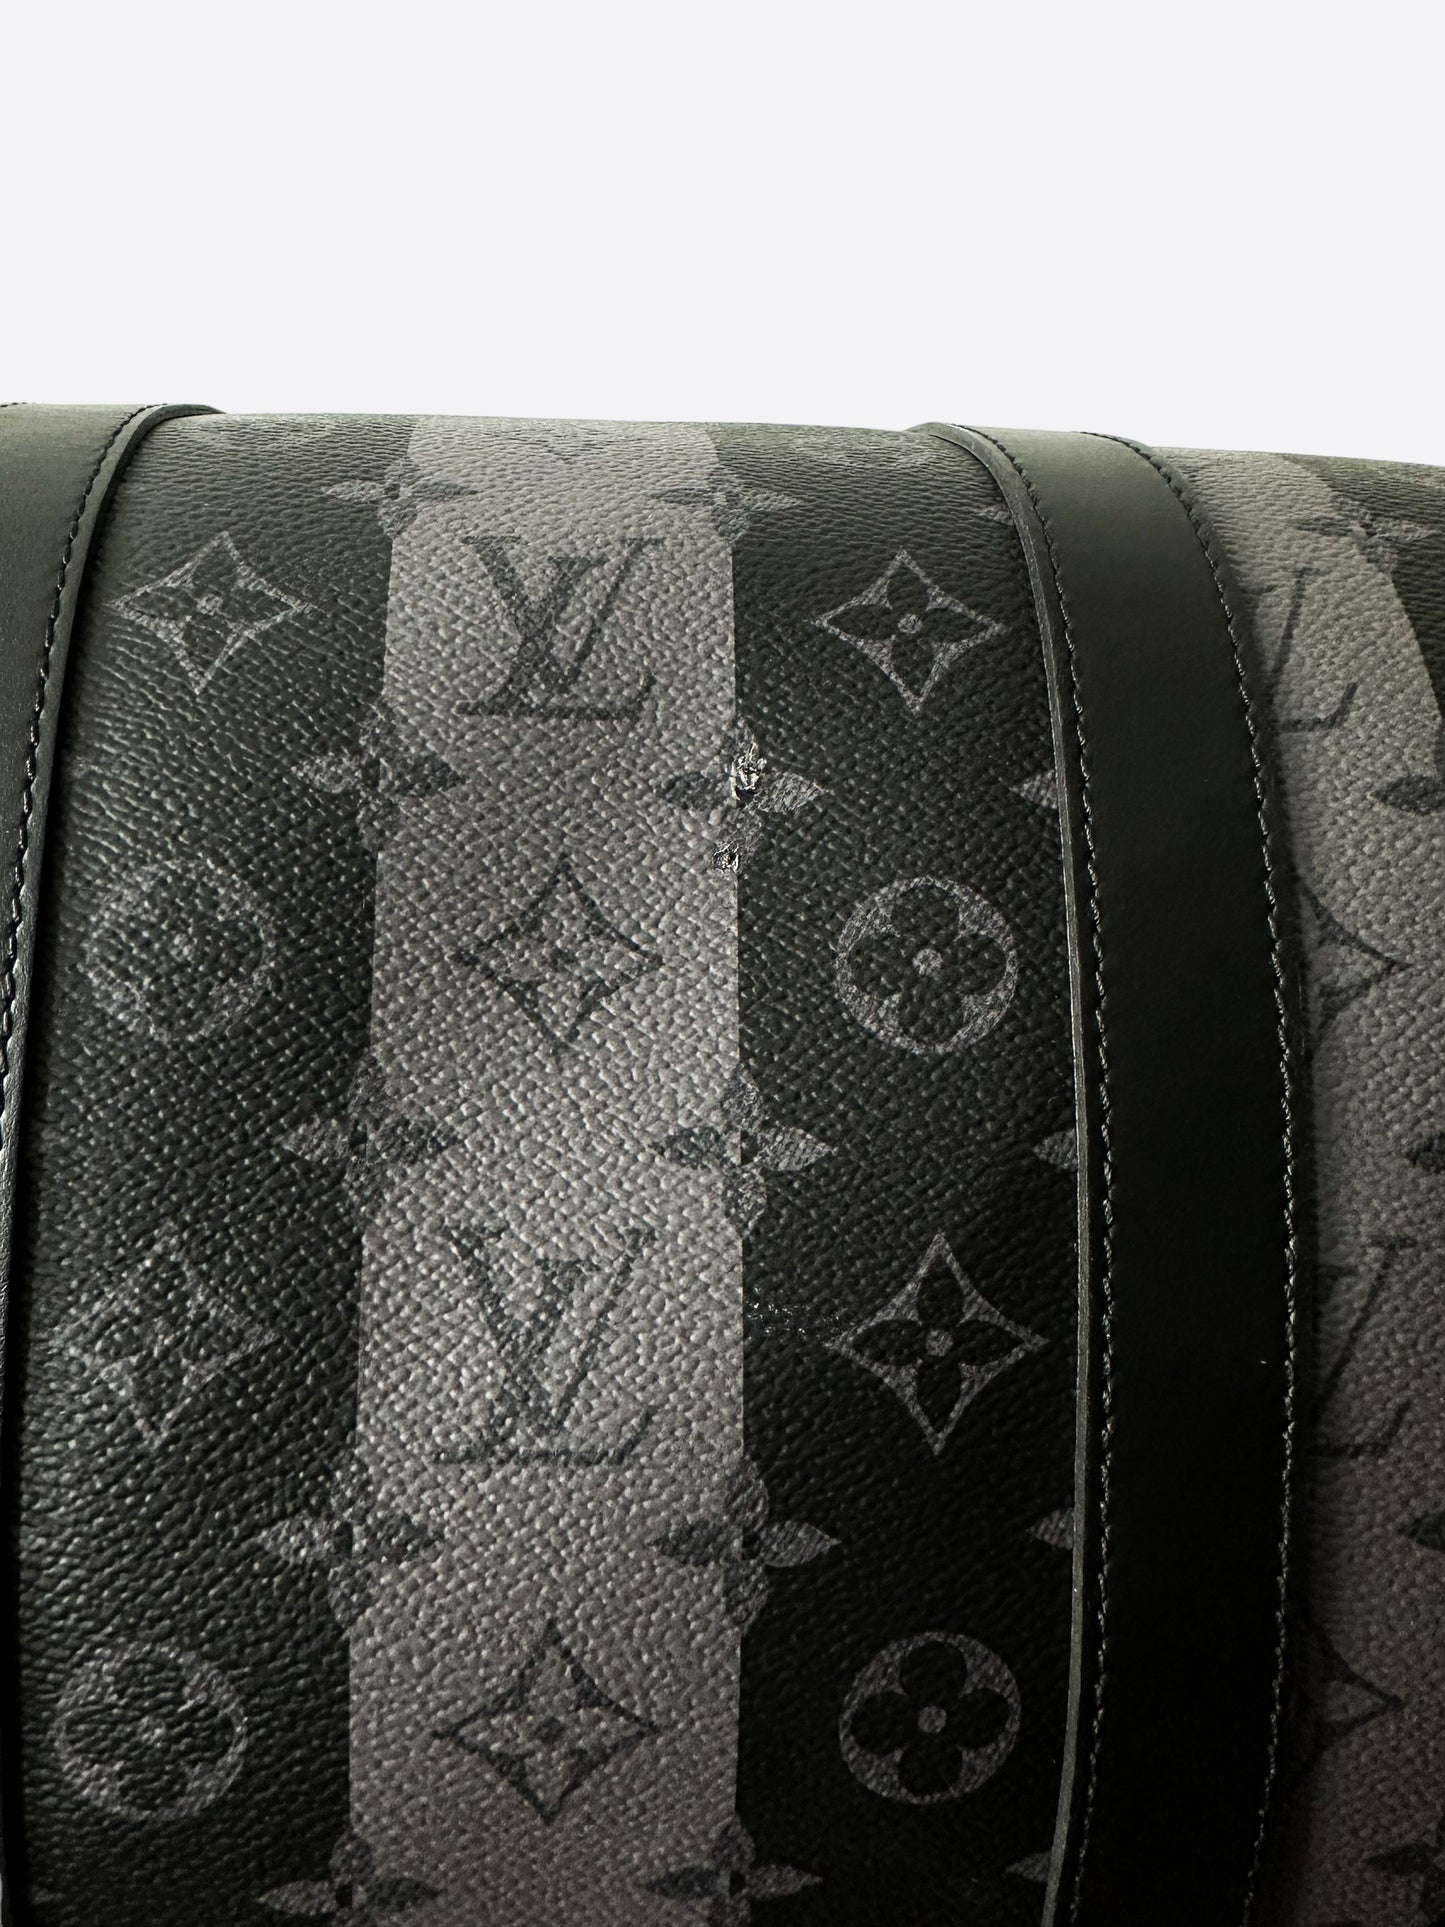 Louis Vuitton x Nigo Keepall Bandouliere 55 Monogram Stripes